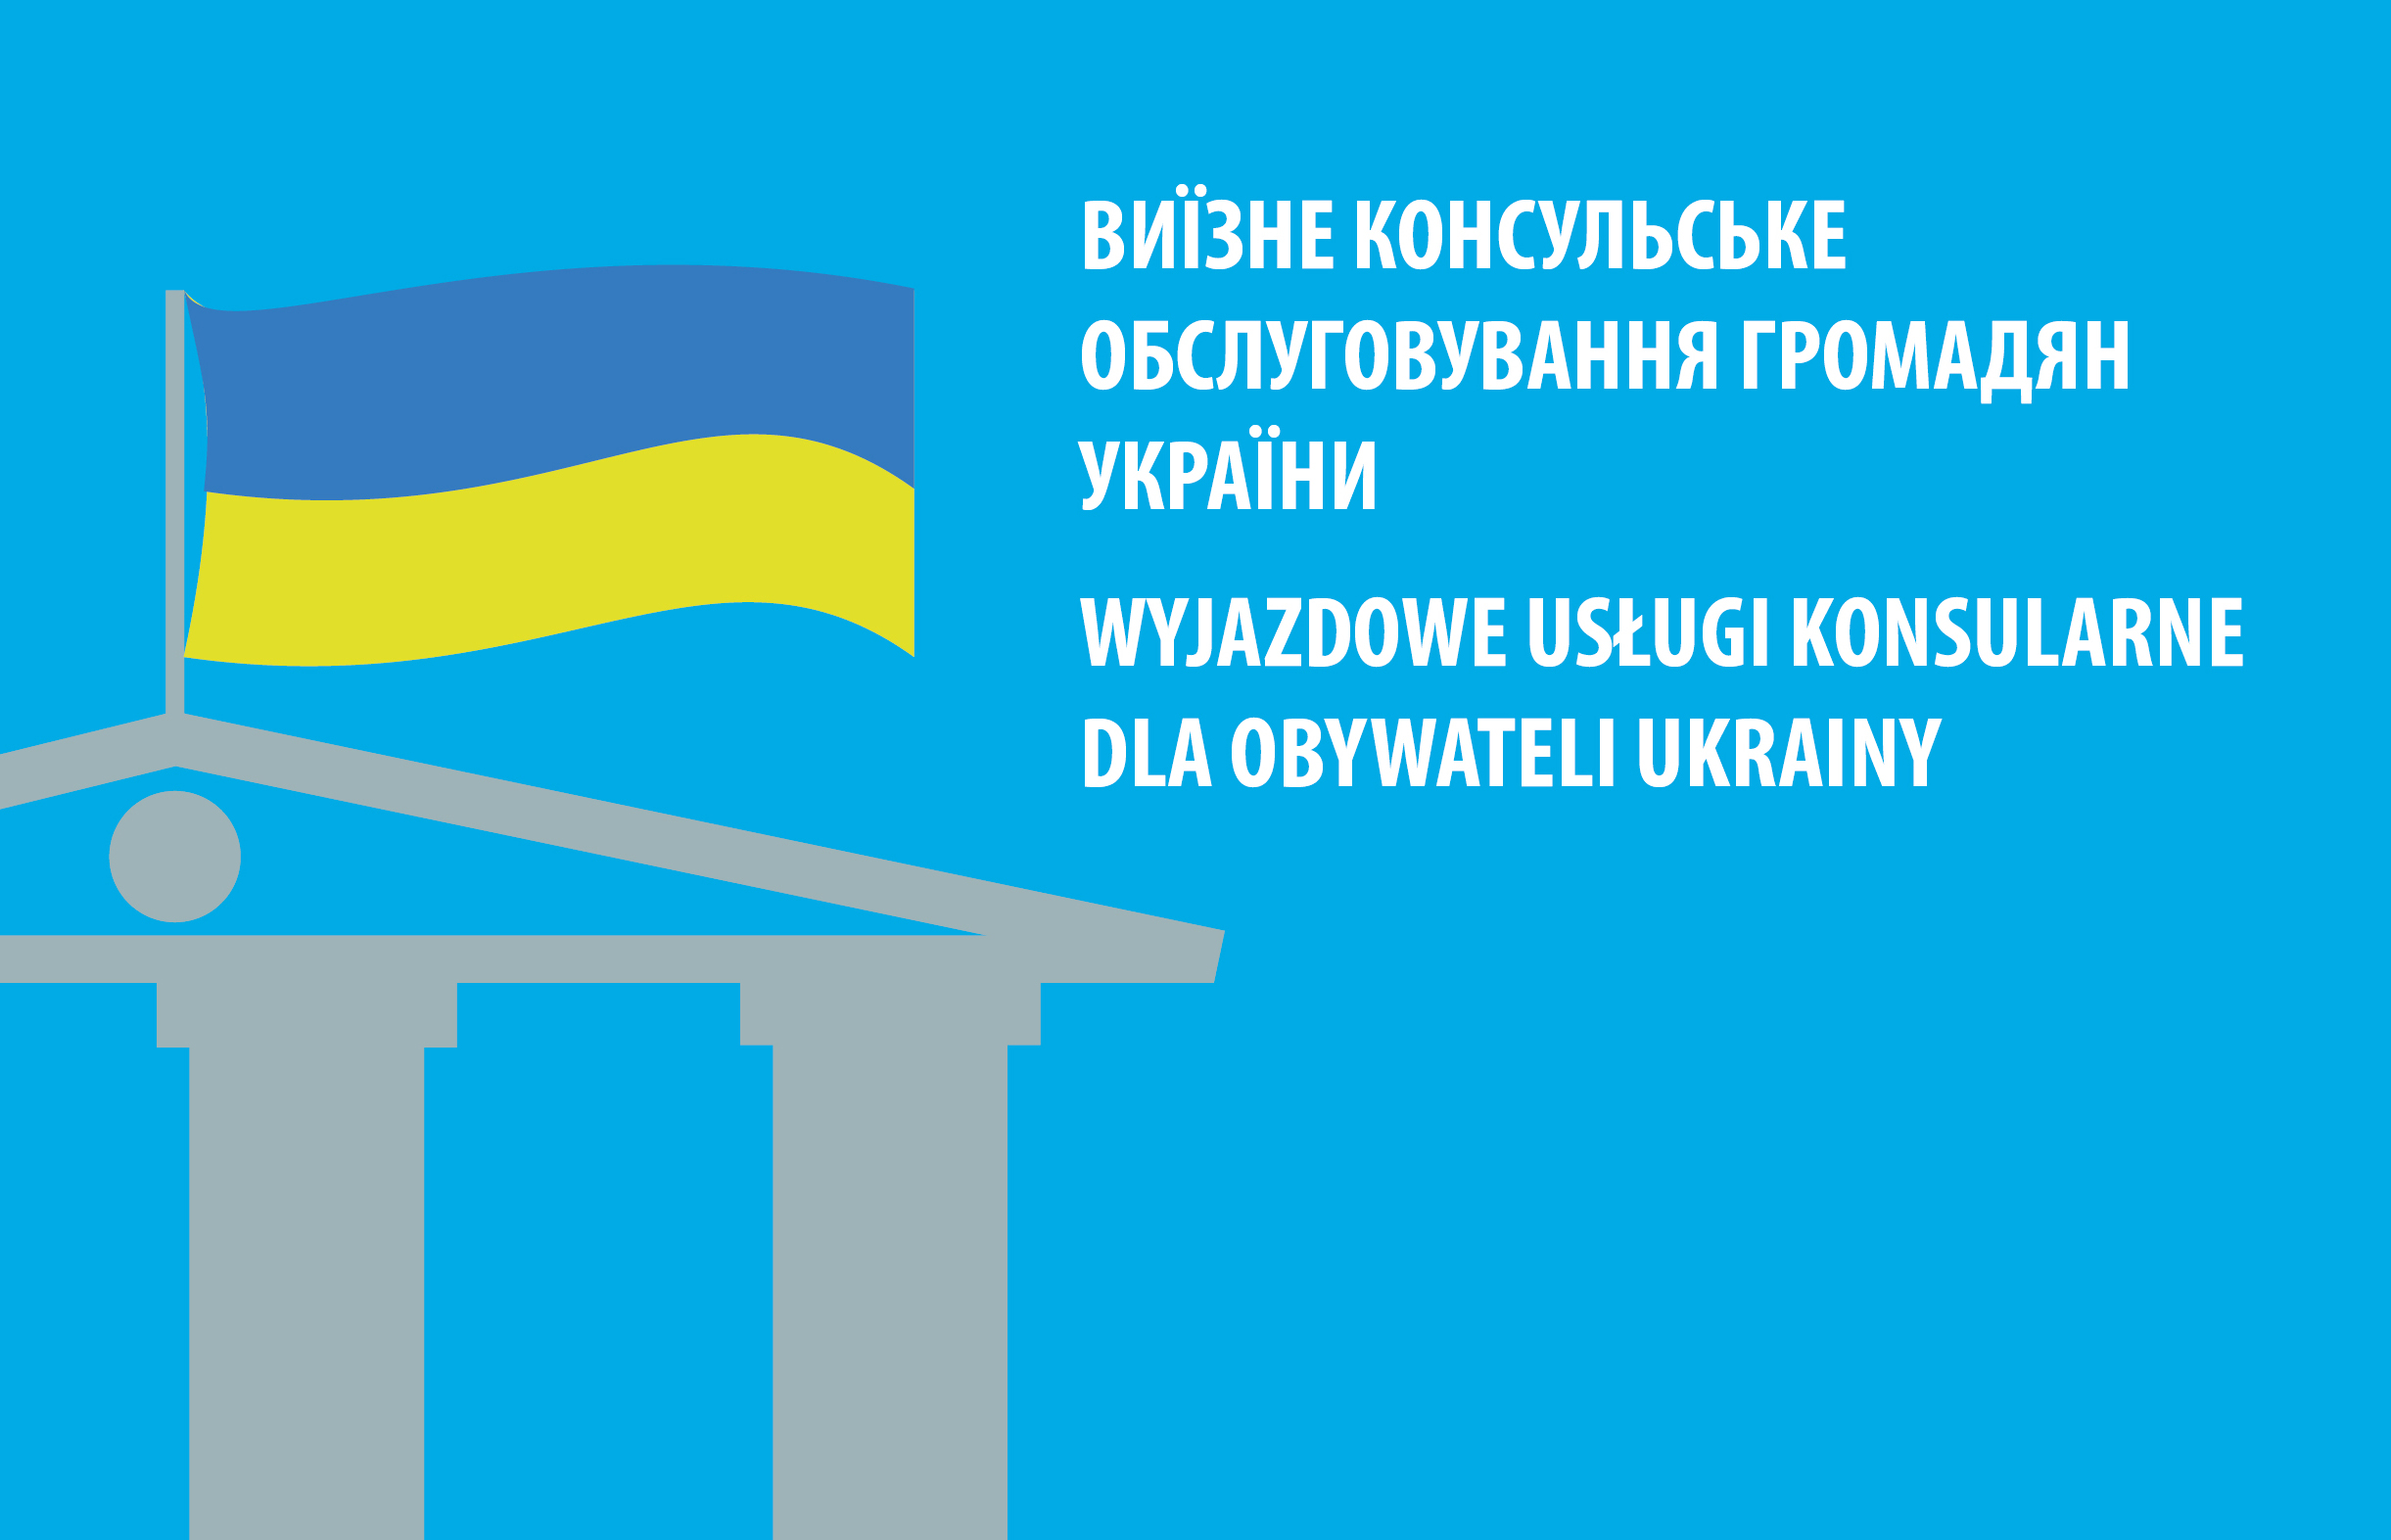 Incontro per i cittadini ucraini con il Viceconsole